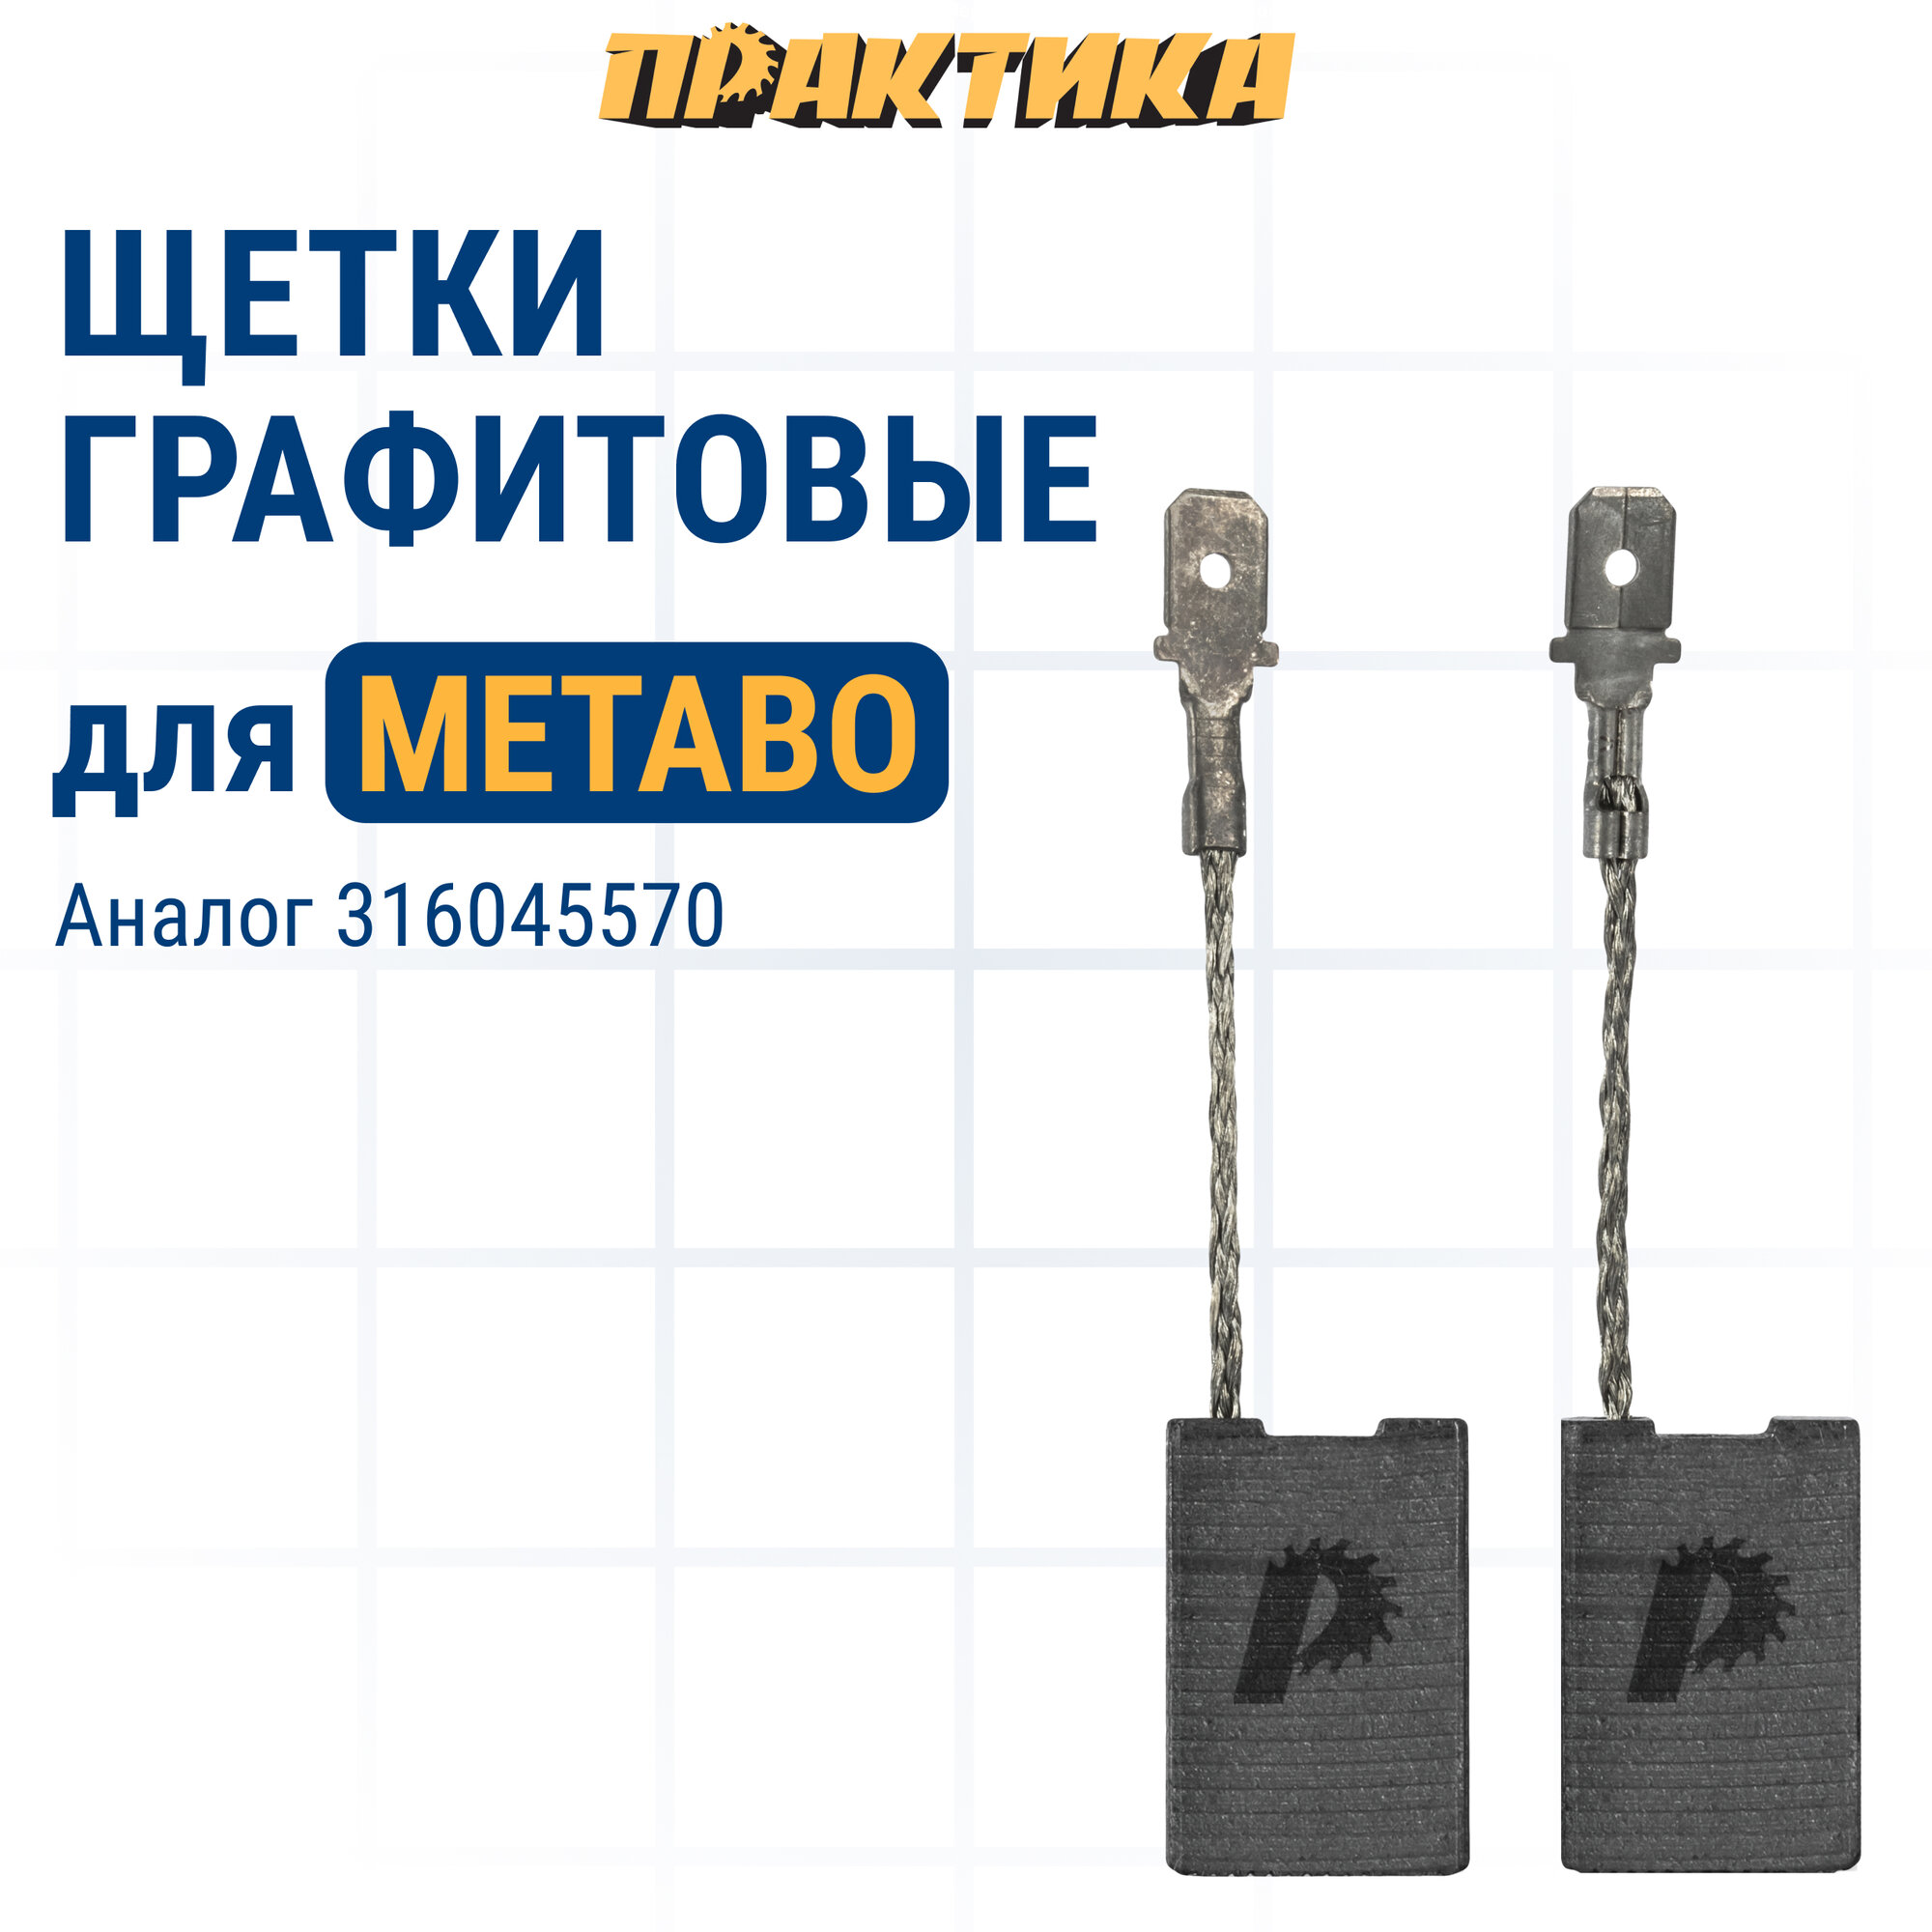 Щетка графитовая ПРАКТИКА для METABO (аналог 316045570) 6х16х24 мм автостоп (790-663)